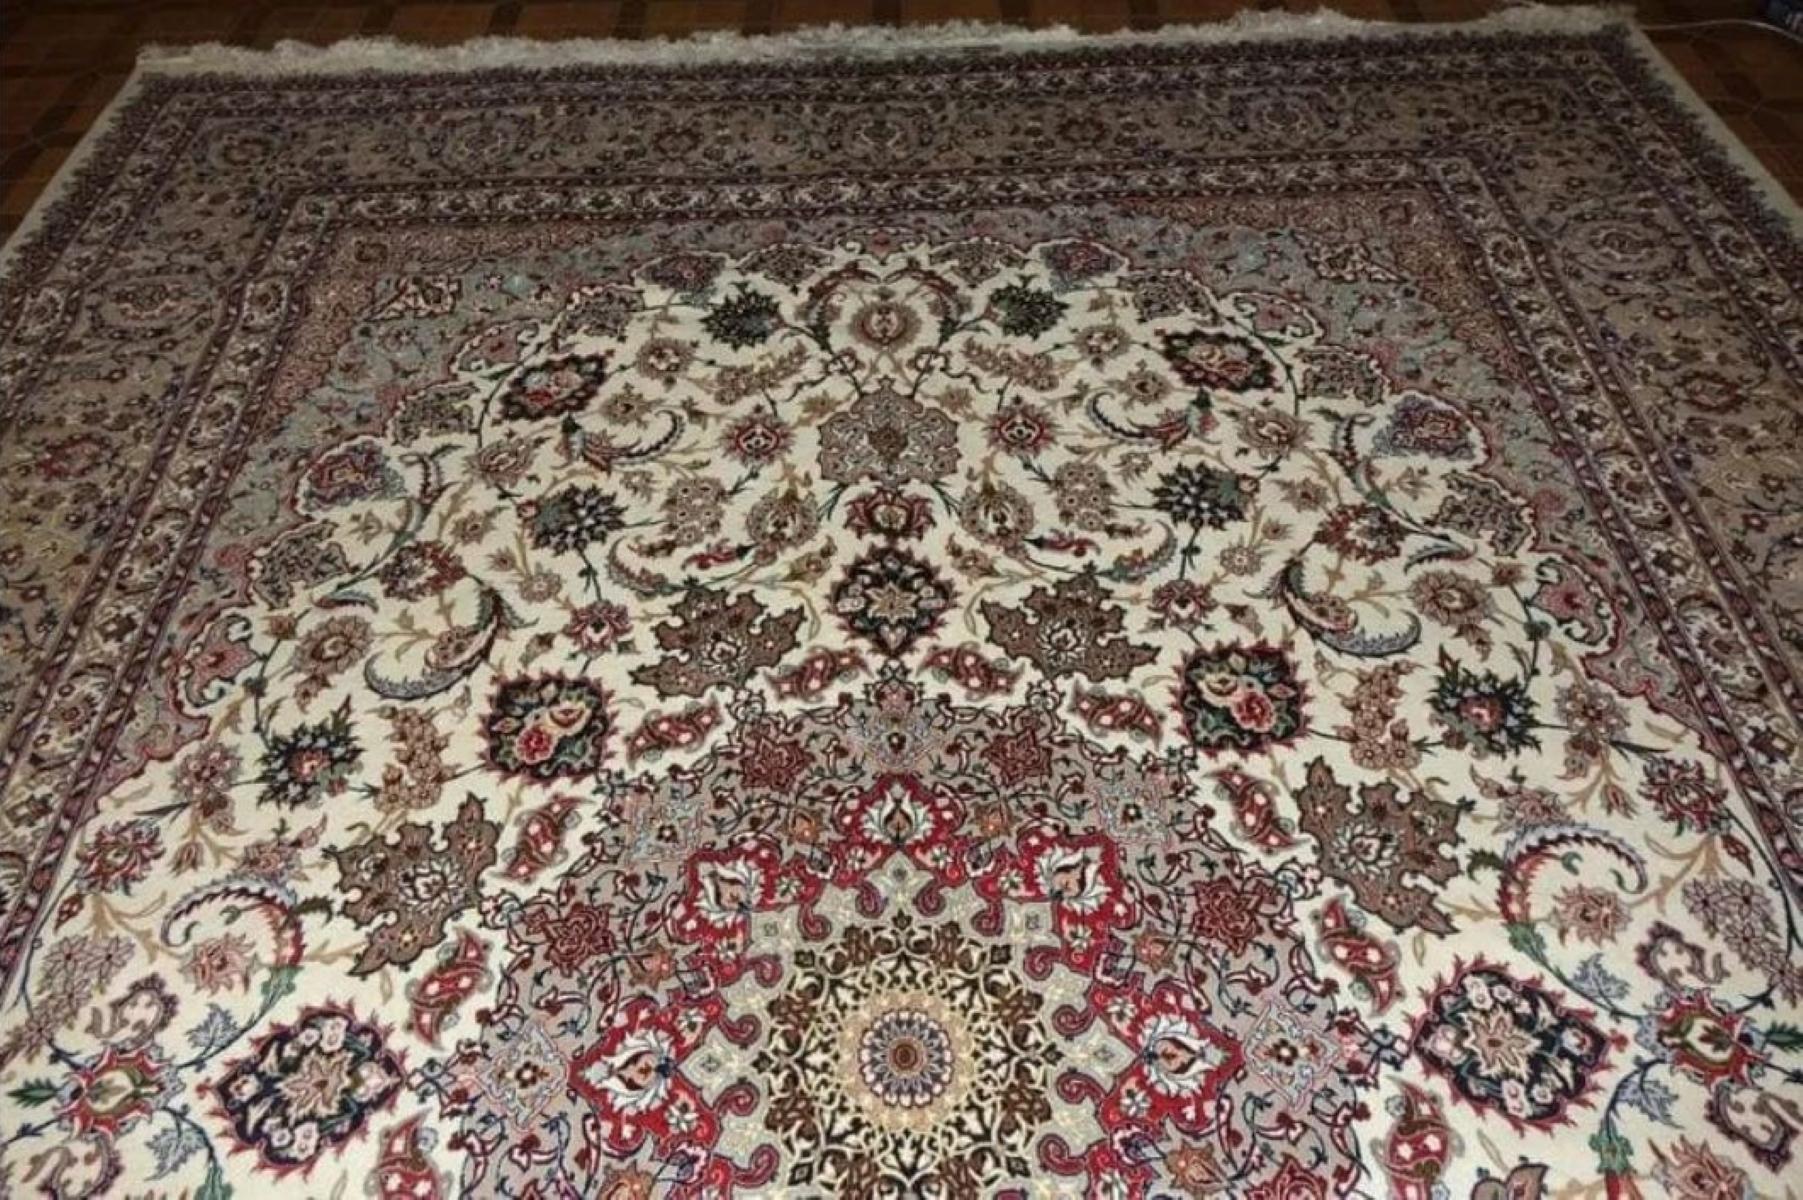 Très beau tapis persan Isfahan 600 noeuds par pouce, Taille 10 x 13 Iran Isfahan Mohsenfatehi  Laine et soie avec fondation en soie. Environ 11 000 000 de nœuds noués à la main, un par un. Il faut 7 ans pour réaliser cette œuvre d'art.